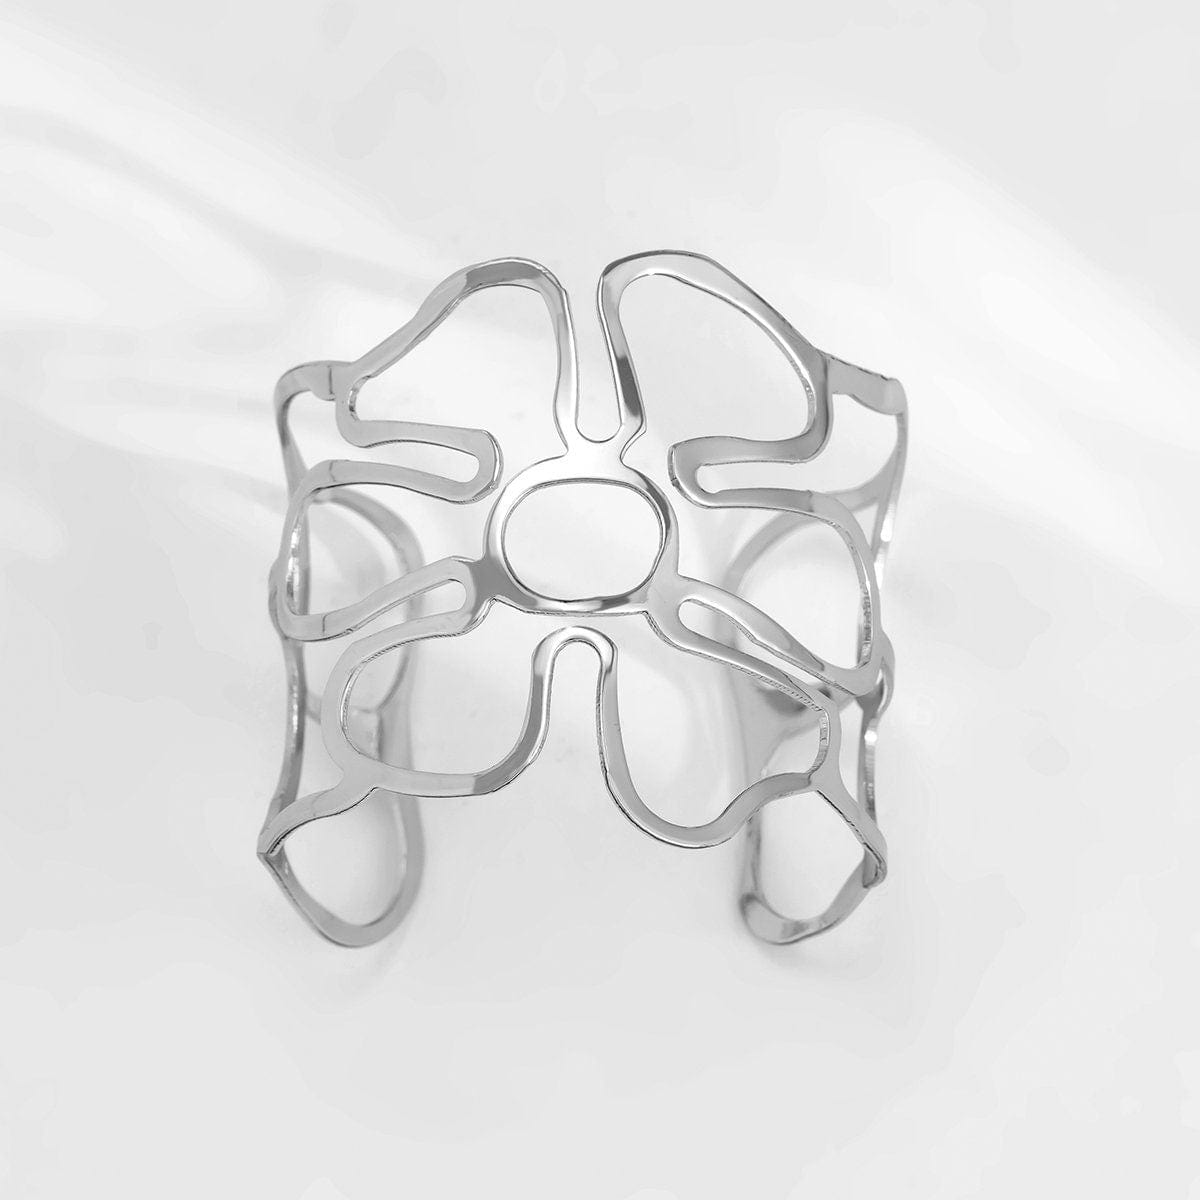 Geometric Abstract Flower Pattern Open Cuff Bangle Bracelet - ArtGalleryZen